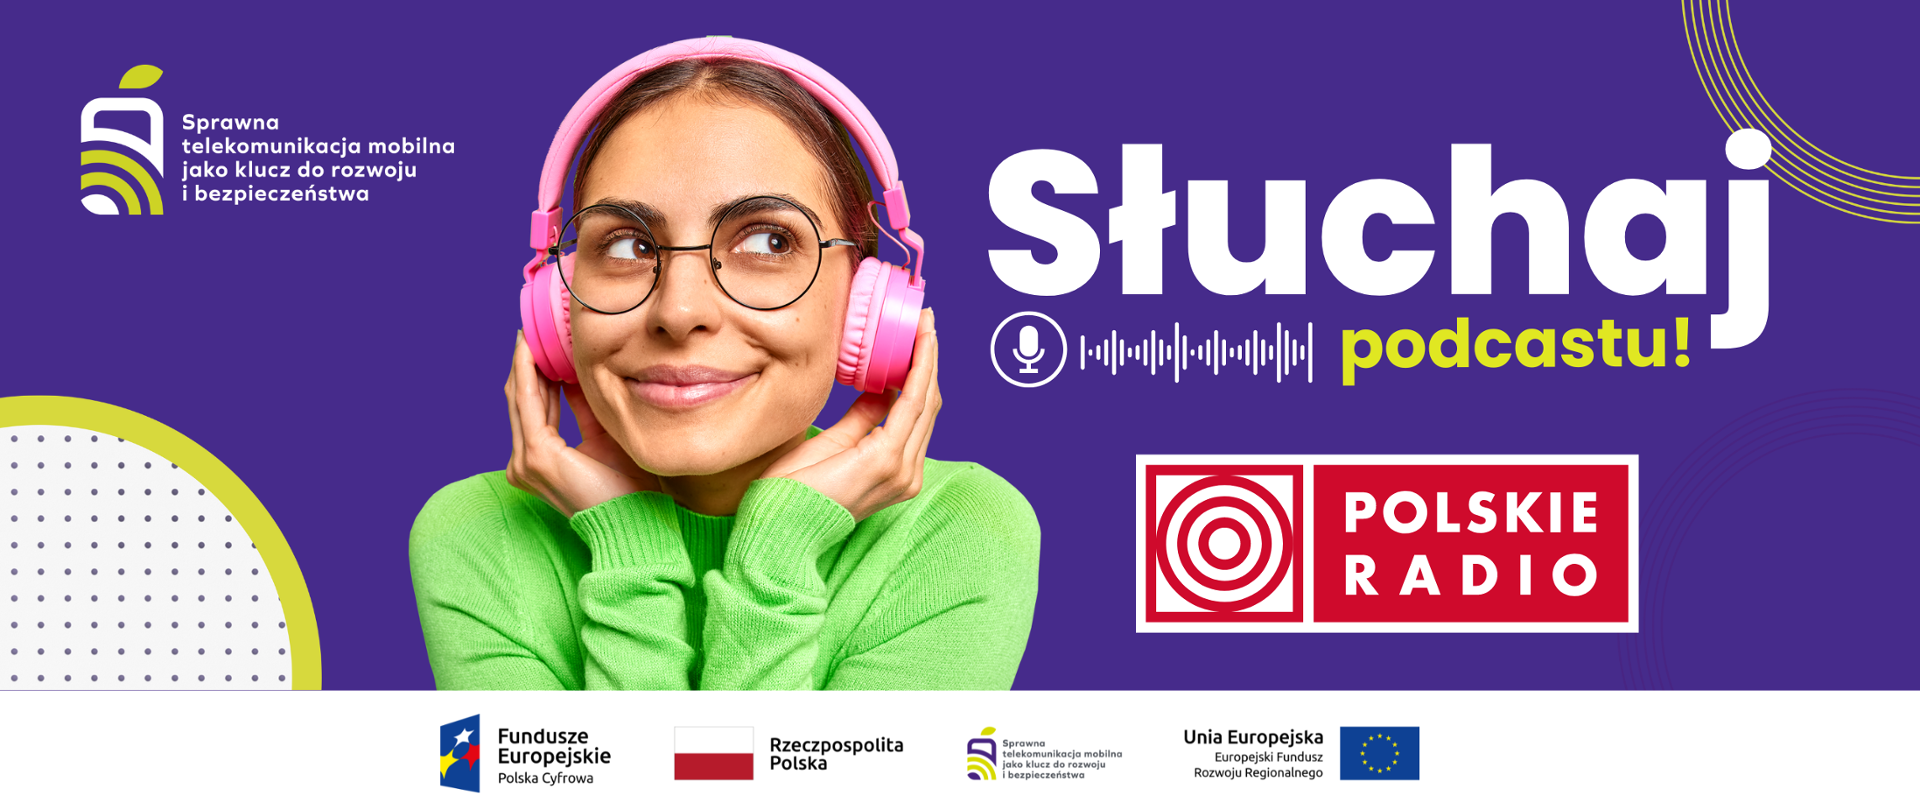 Zdjęcie przedstawia uśmiechniętą dziewczyną, która ma na głowie słuchawki oraz napis Słuchaj podcastu i logo Polskiego Radia.